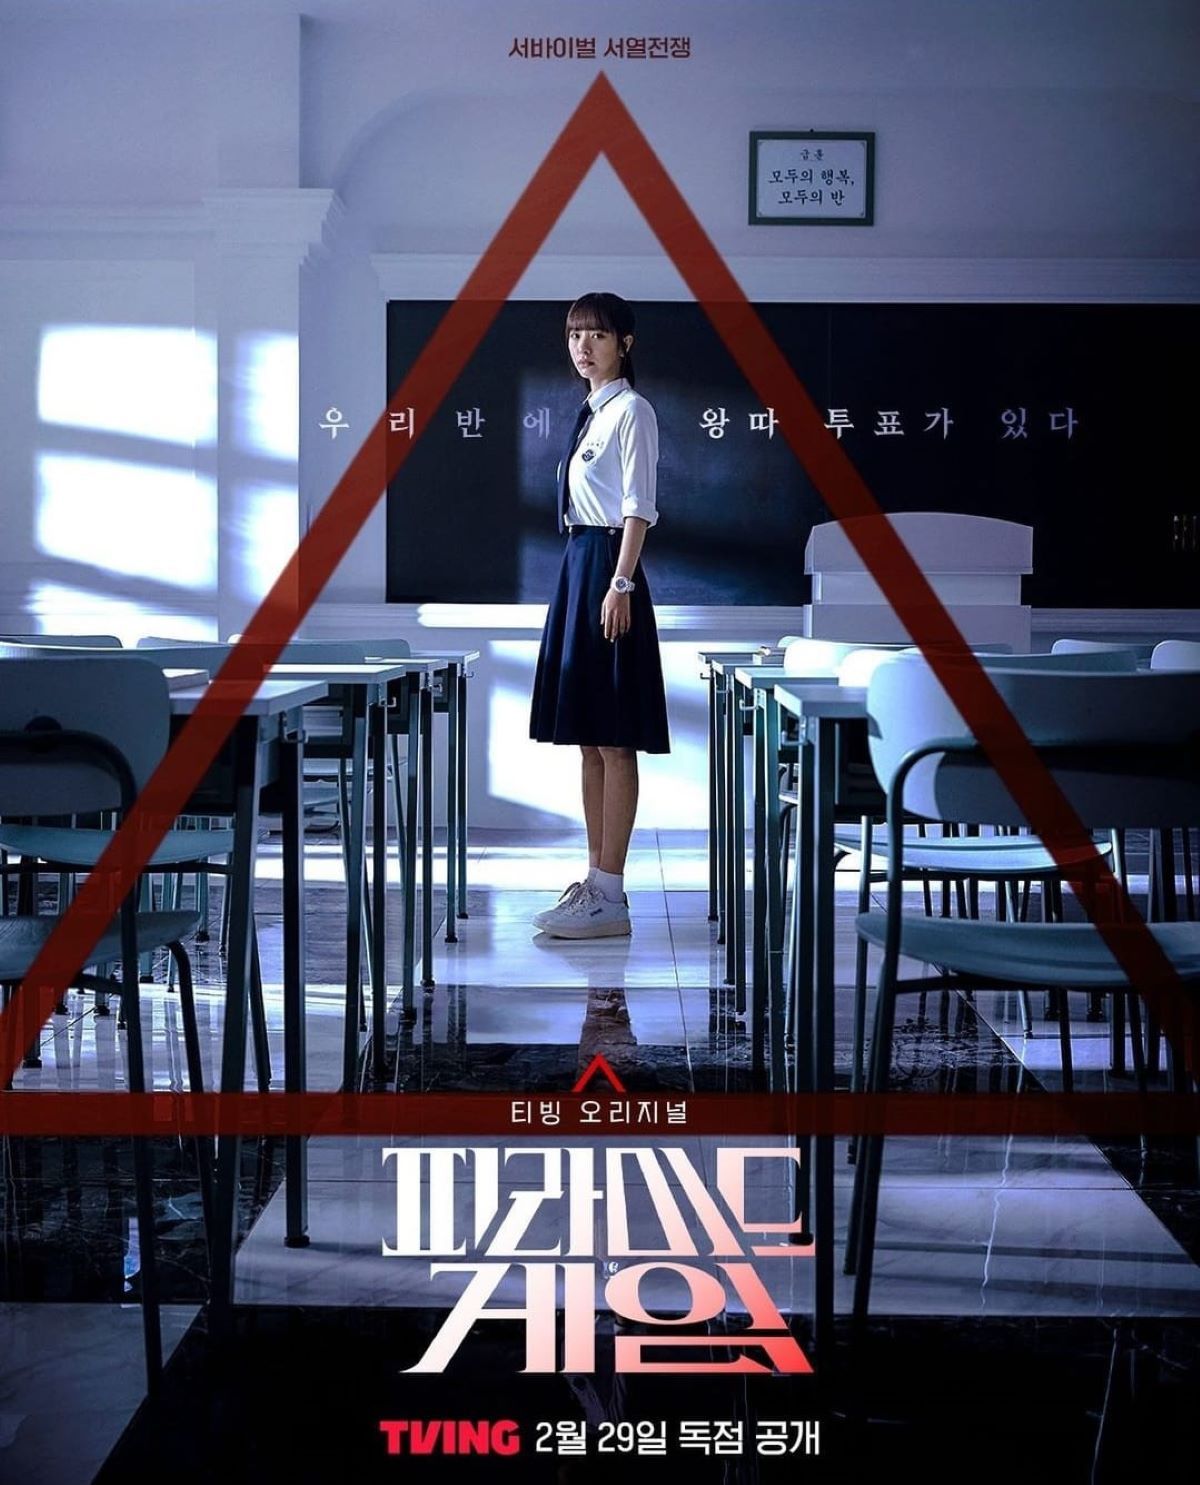 Bona WJSN Menjadi Target Bullying dalam Poster Teaser Drama ‘Pyramid Game’